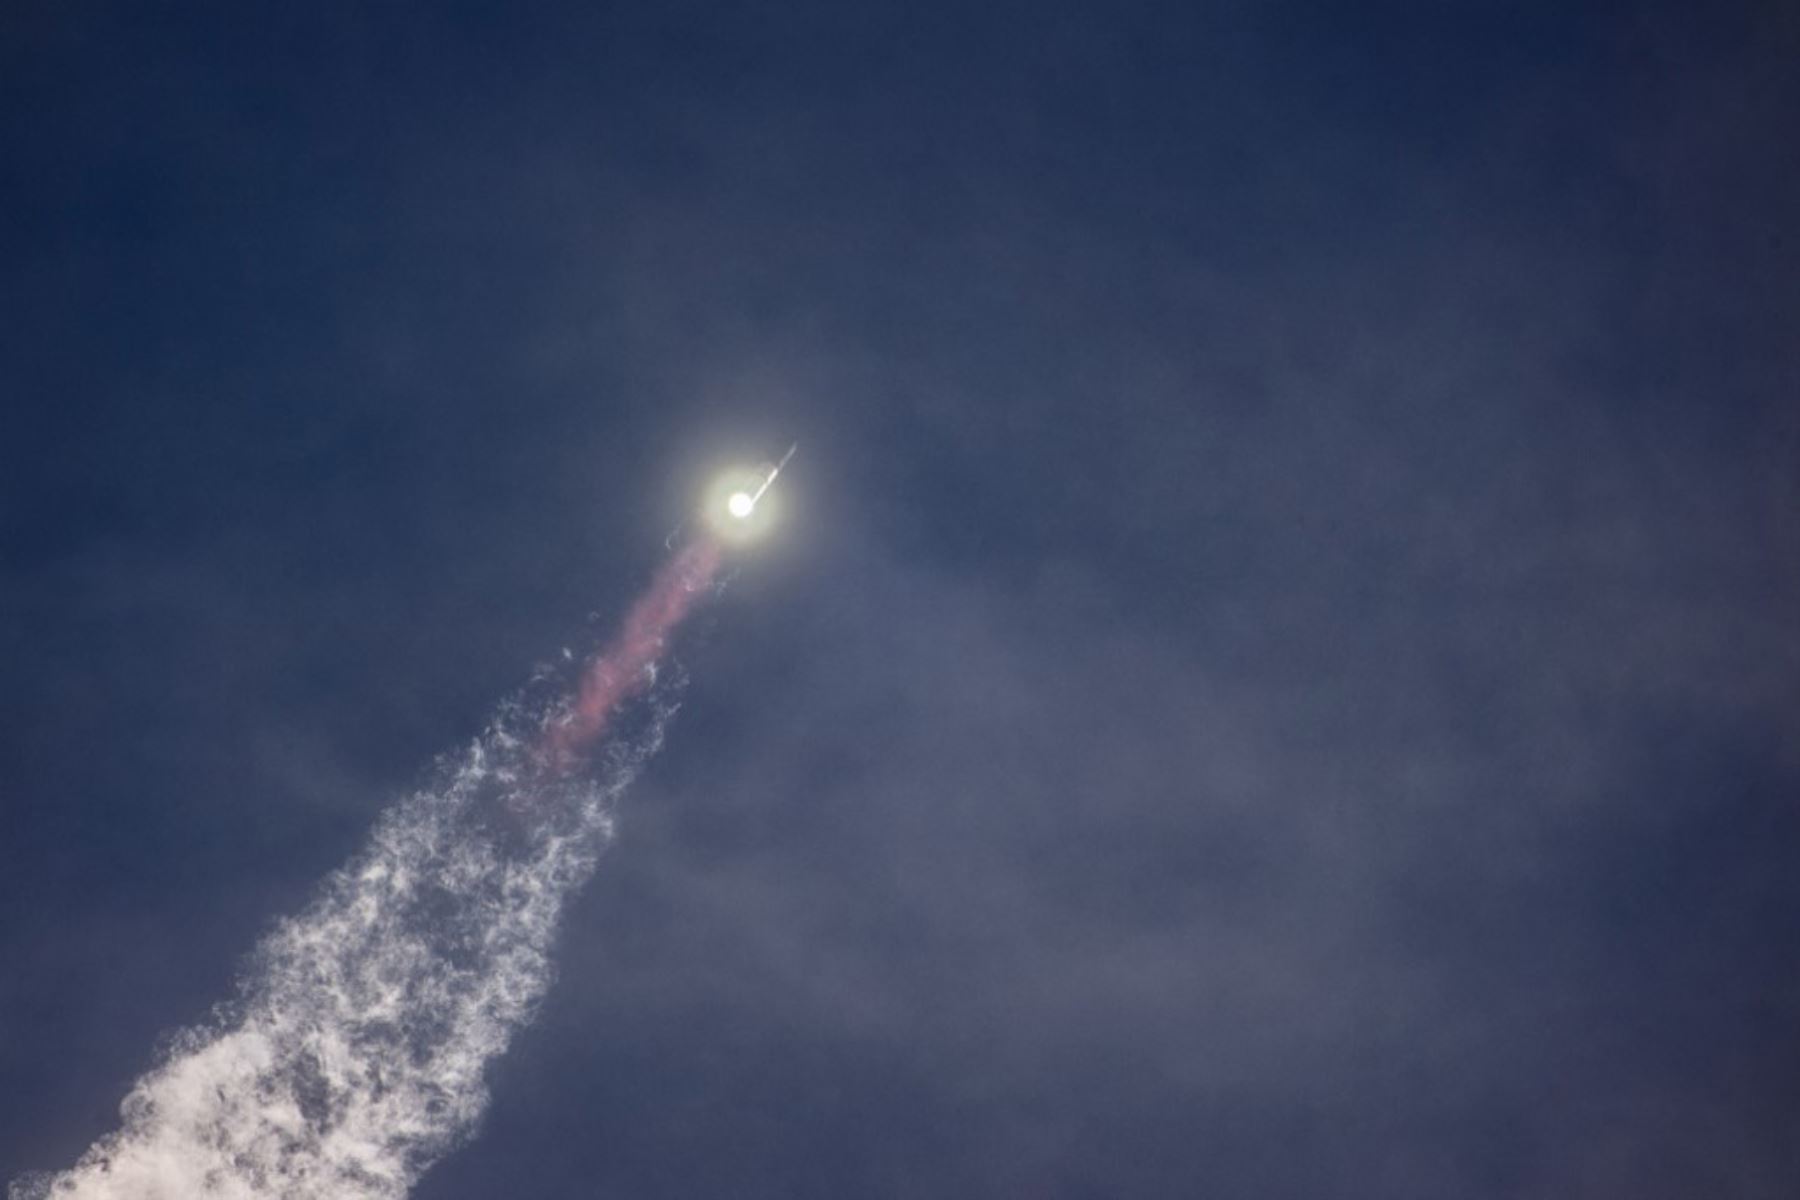 El gigantesco cohete Starship de SpaceX, que tiene como objetivo a largo plazo ser utilizado en viajes a la Luna y Marte, despegó este jueves de Estados Unidos para su tercer vuelo de prueba, tras dos intentos que terminaron en explosiones el año pasado. Foto: AFP